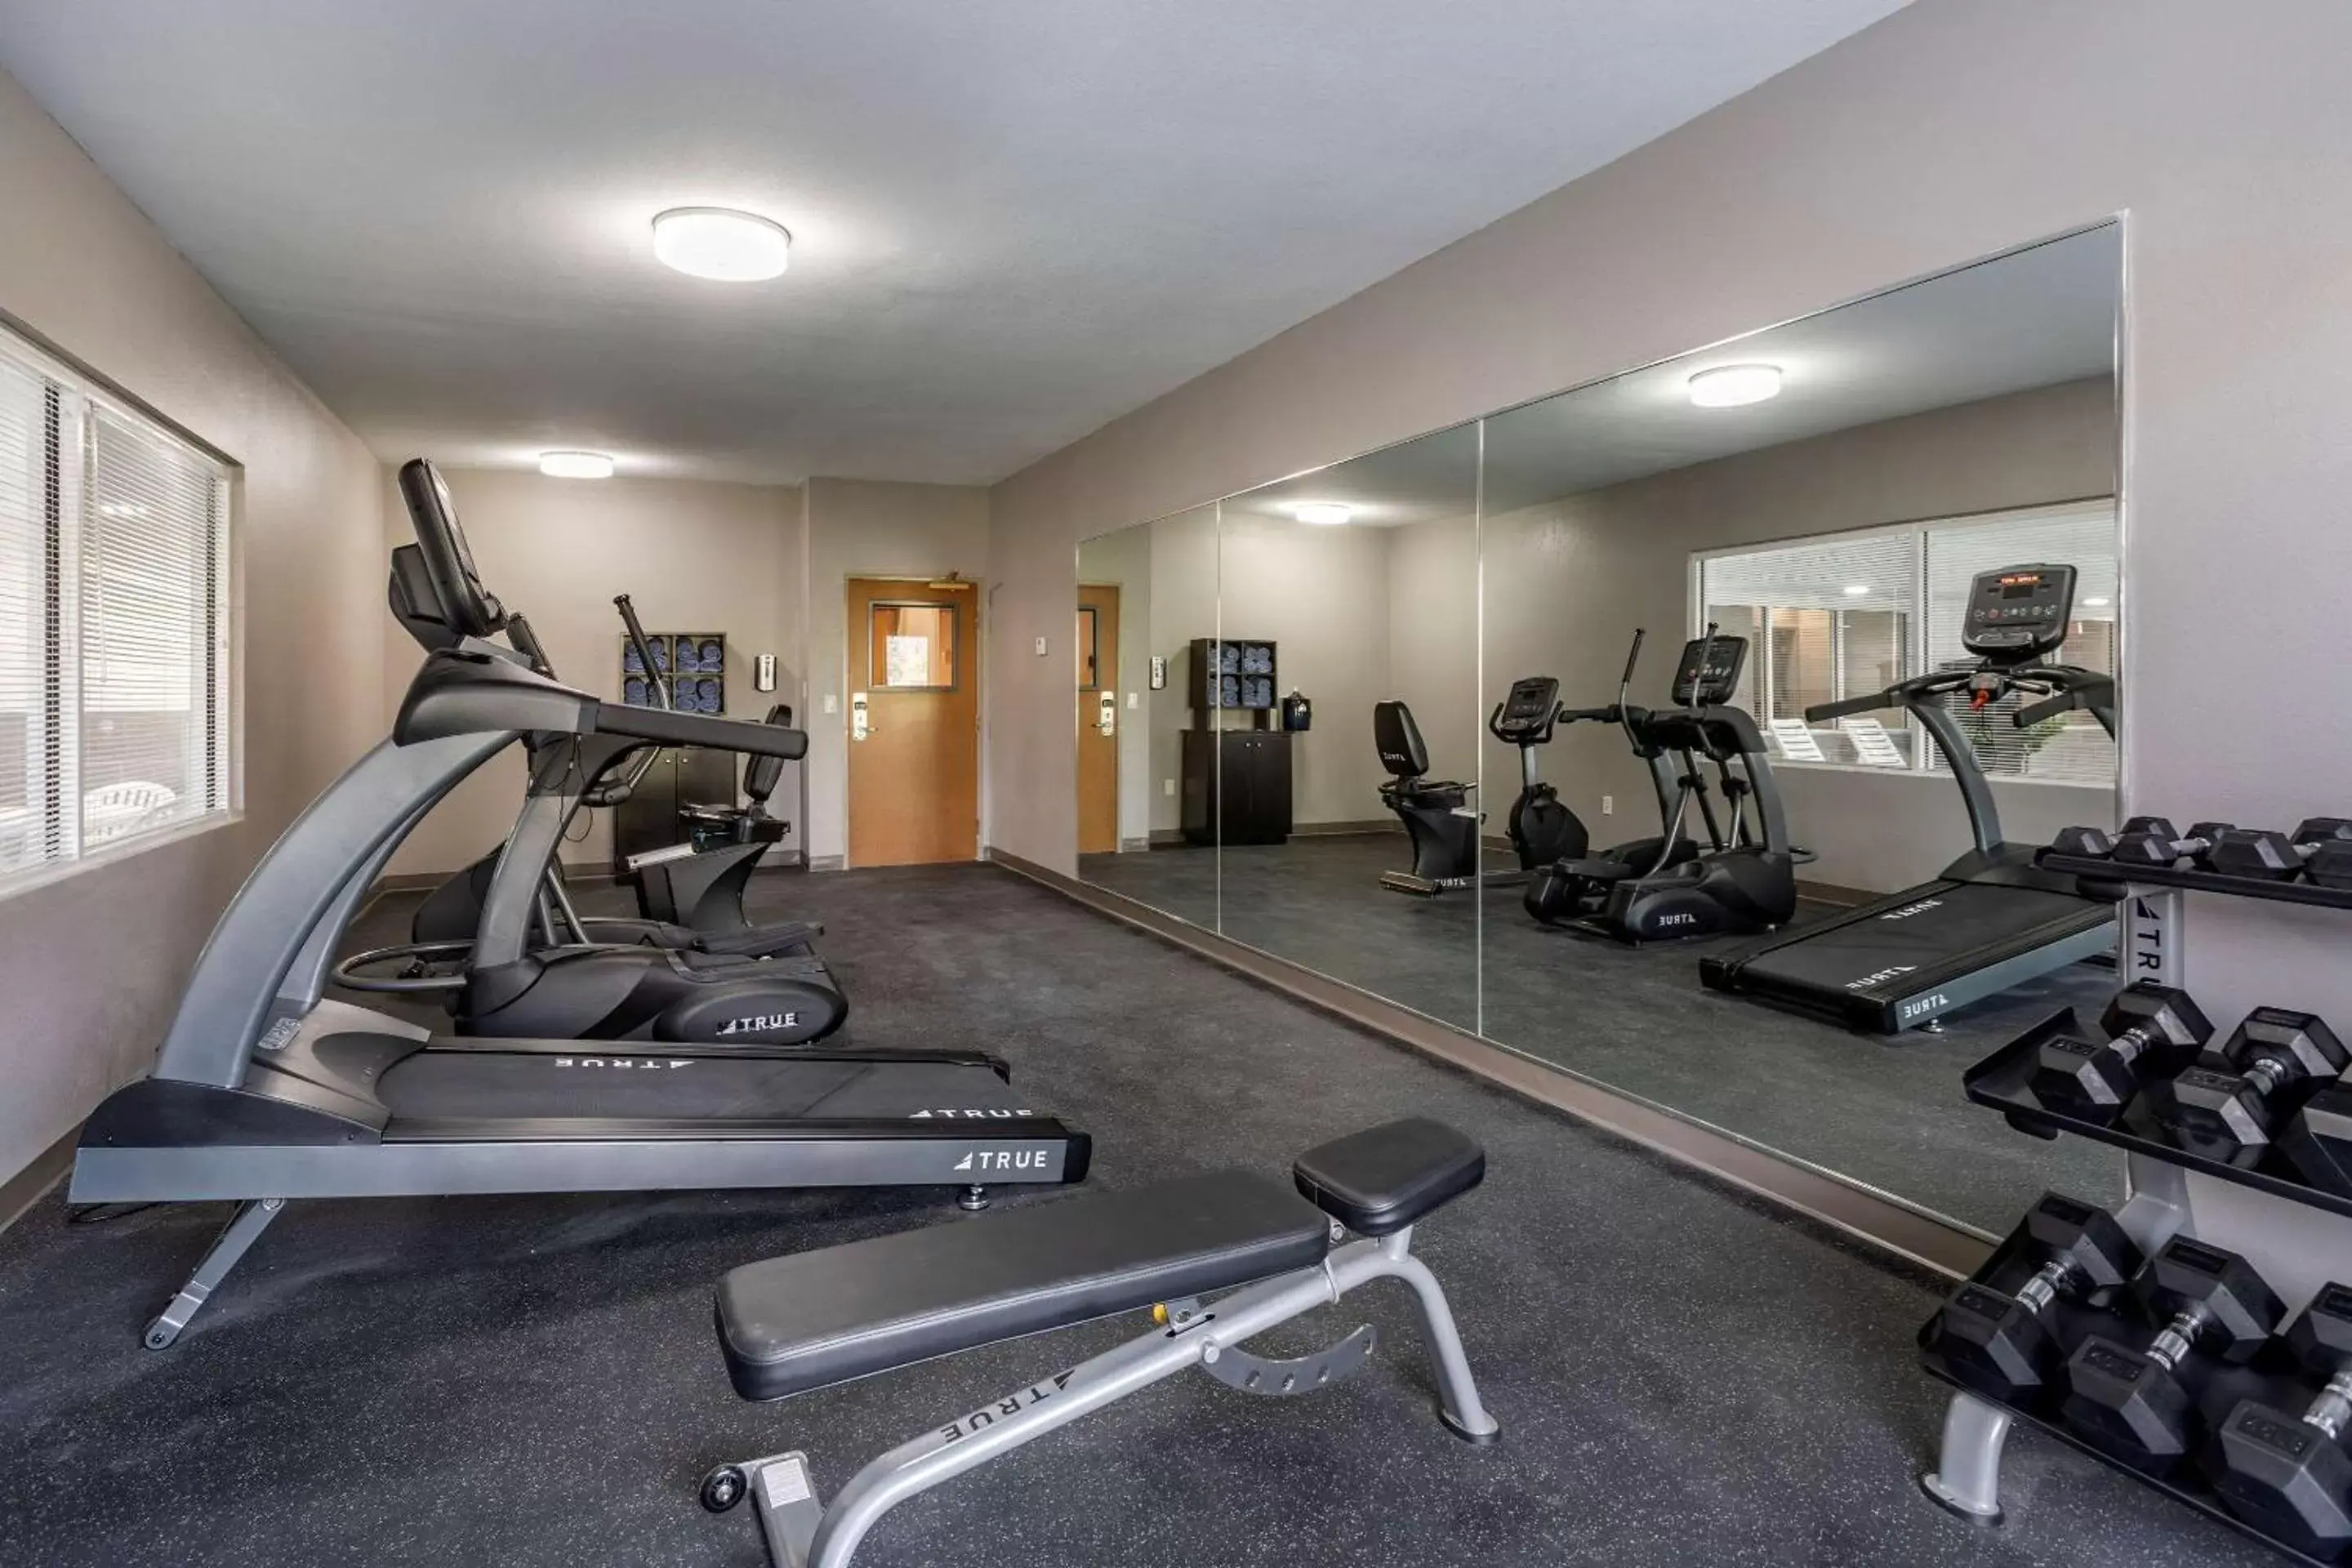 Activities, Fitness Center/Facilities in Sleep Inn & Suites Lebanon - Nashville Area